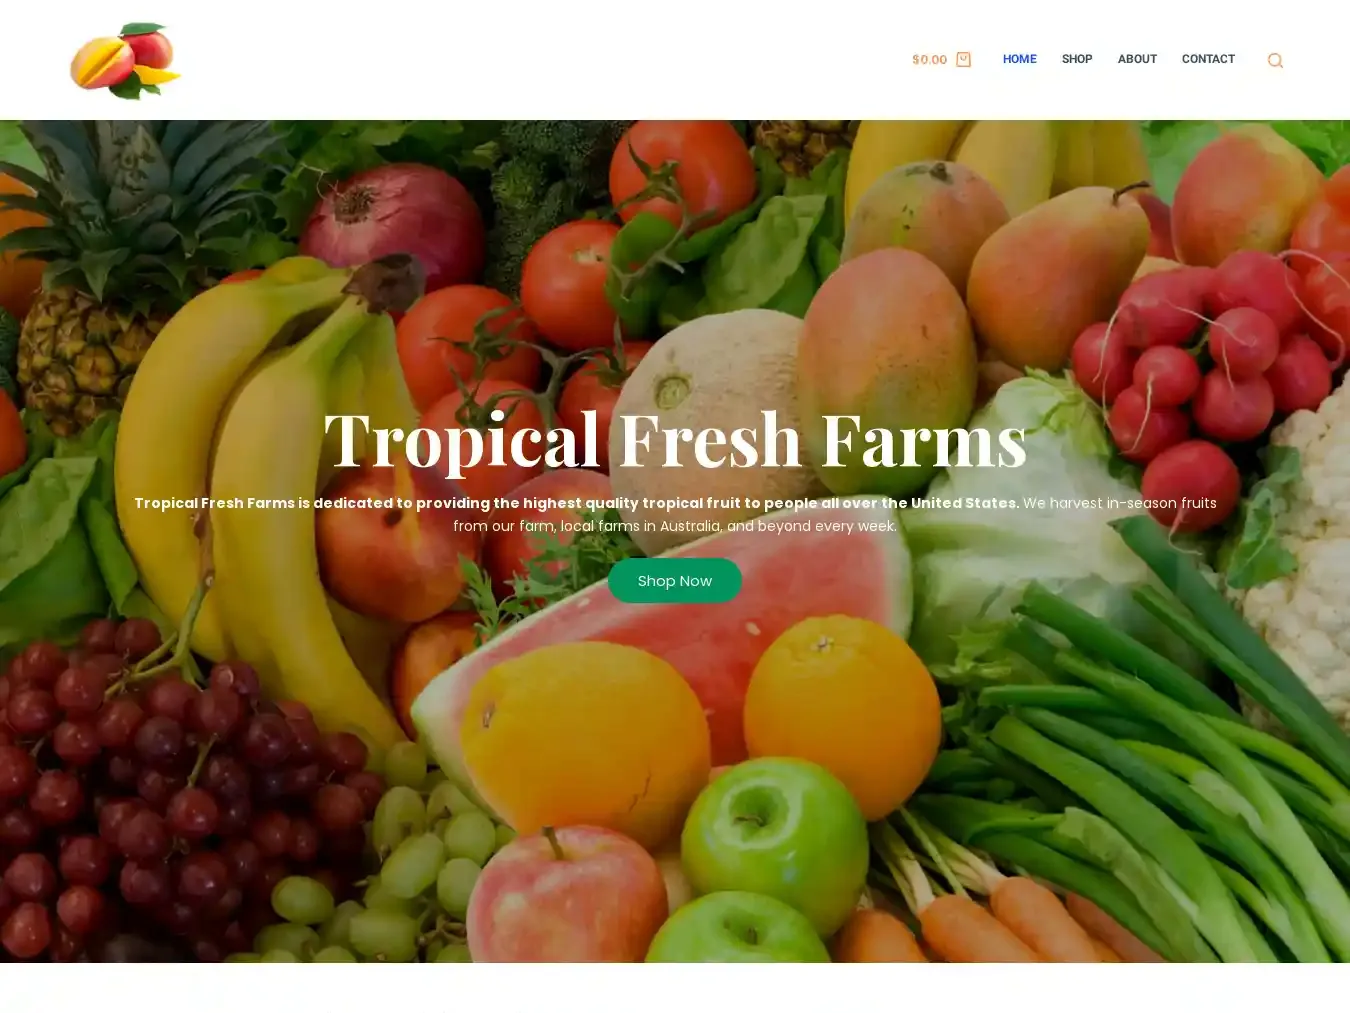 Tropicalfreshfarms.com Fraudulent Commodity website.